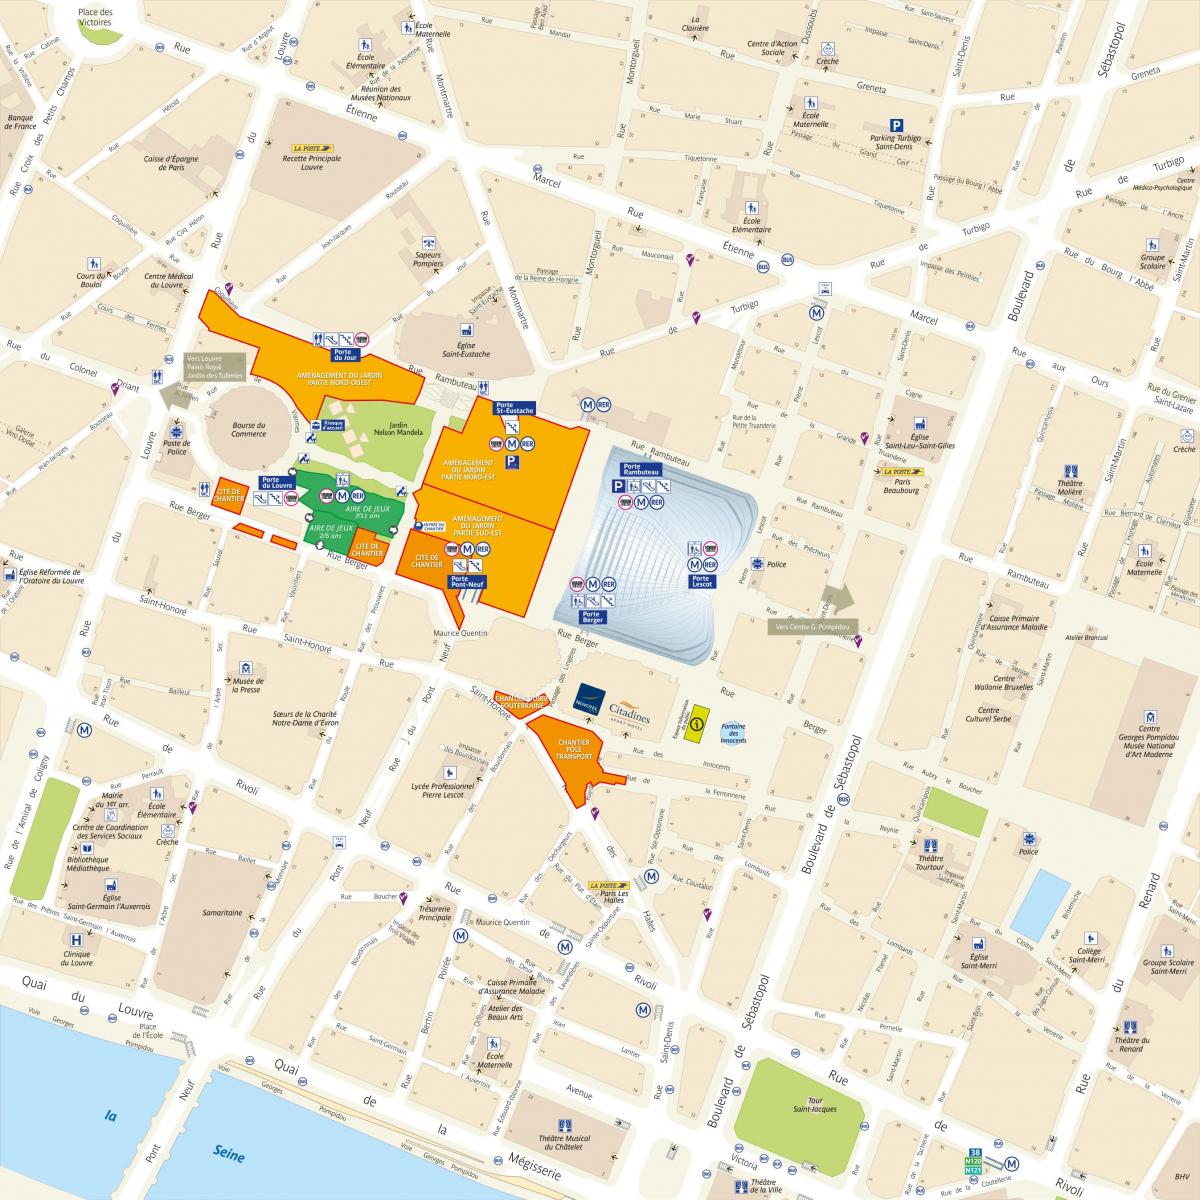 Mapa ng Distrito ng Les Halles